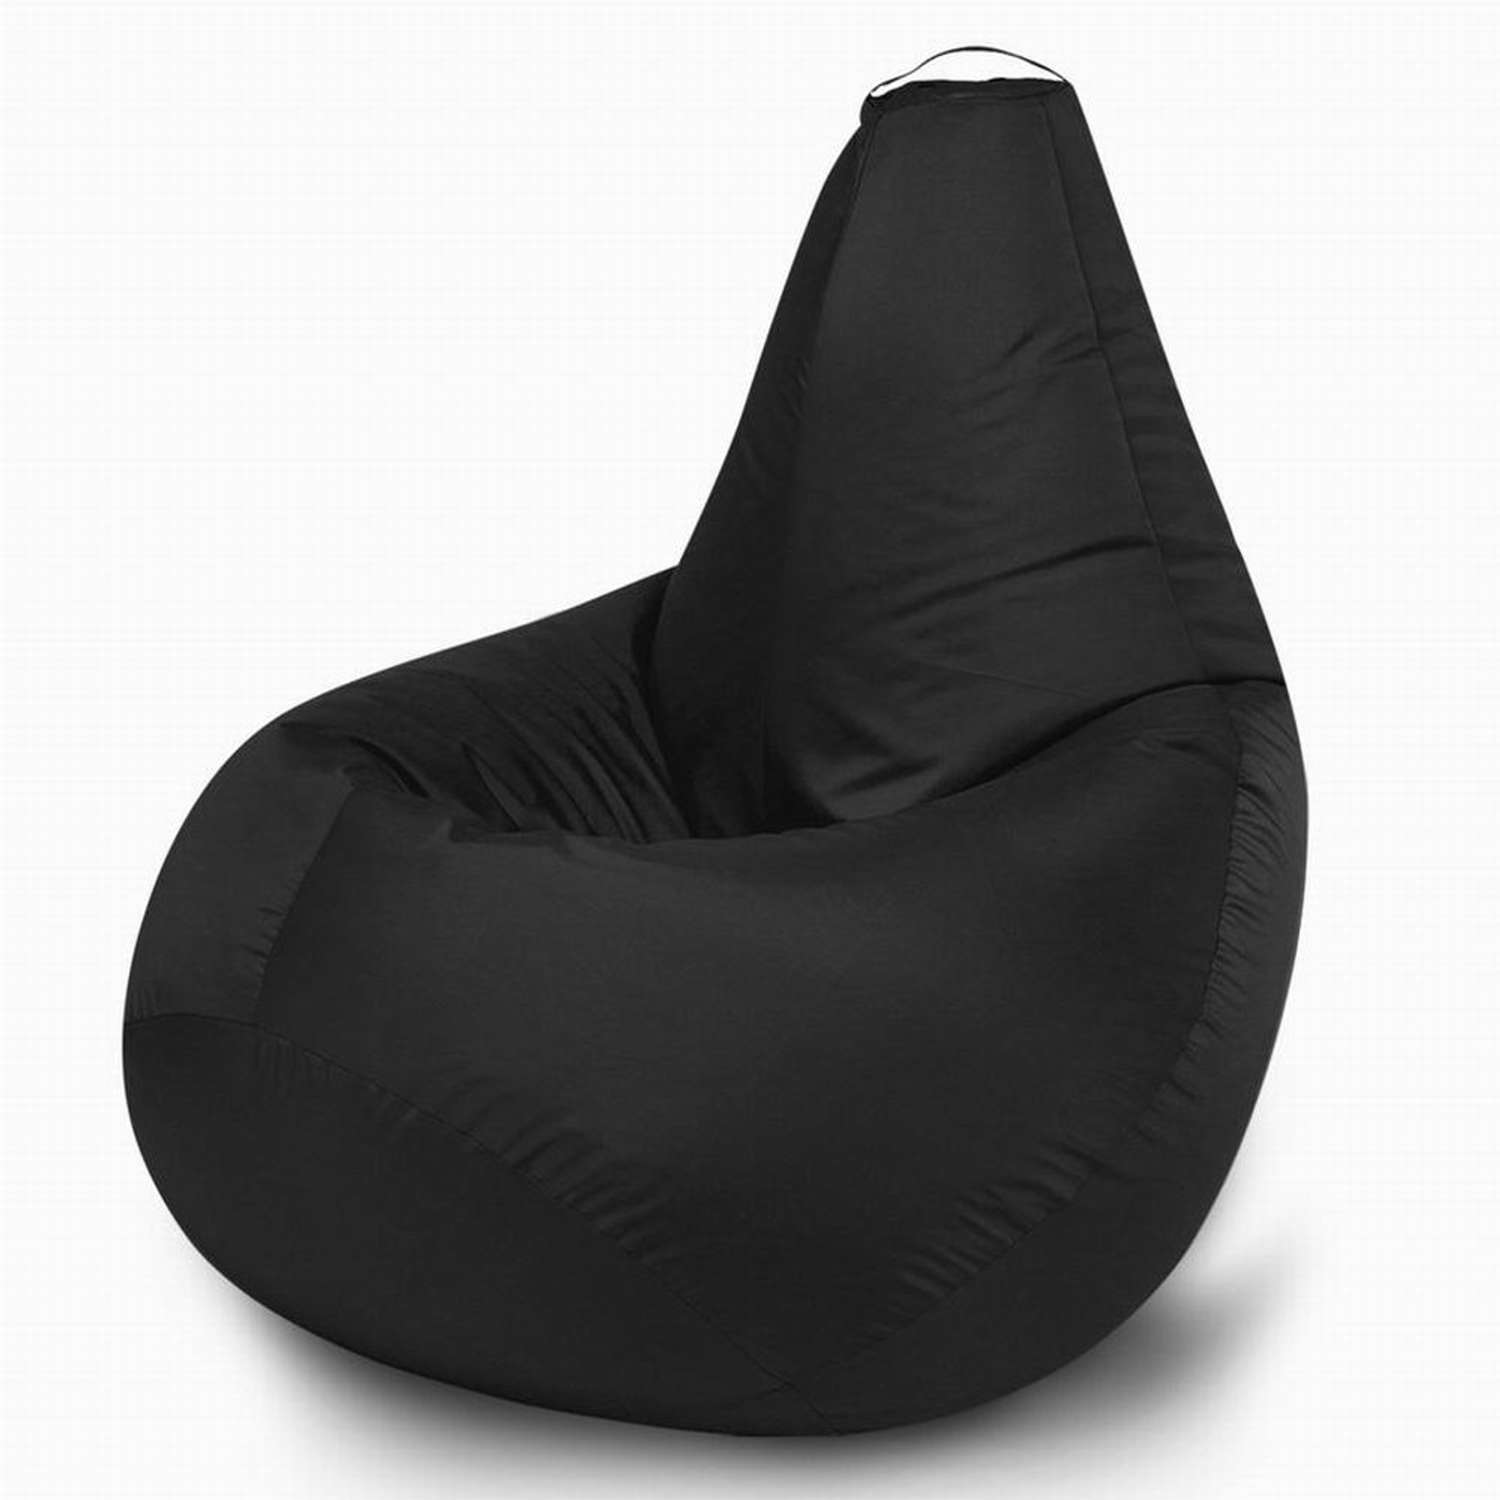 Кресло-мешок груша MyPuff размер XXL миди оксфорд - фото 1